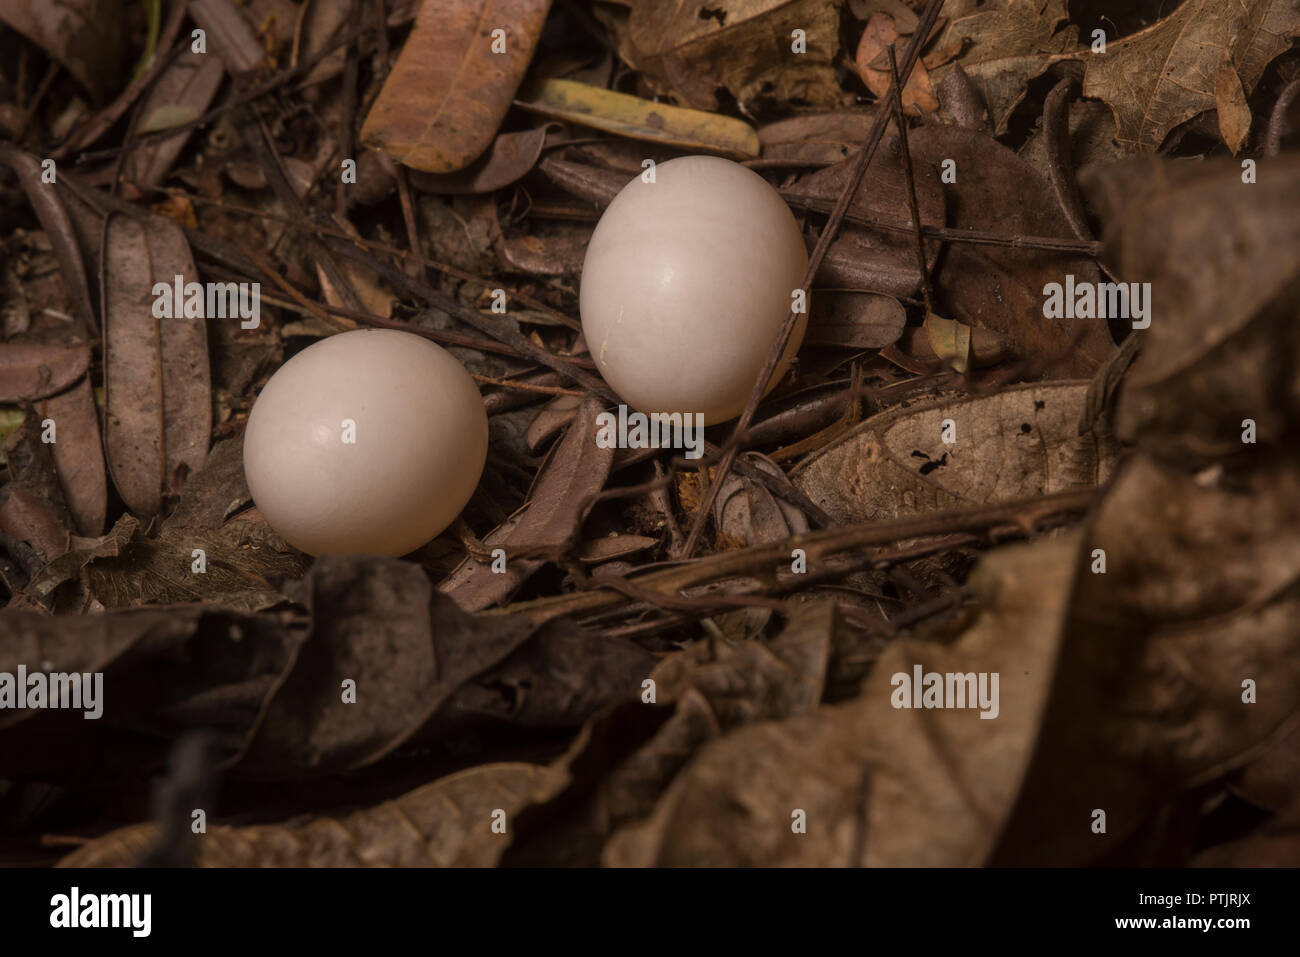 Die Eier einer Nightjar, nighthawk, oder poorwhill Arten auf dem Boden. Kein Nest gebaut, anstatt die Eier sind inmitten Blattsänfte hinterlegt. Stockfoto